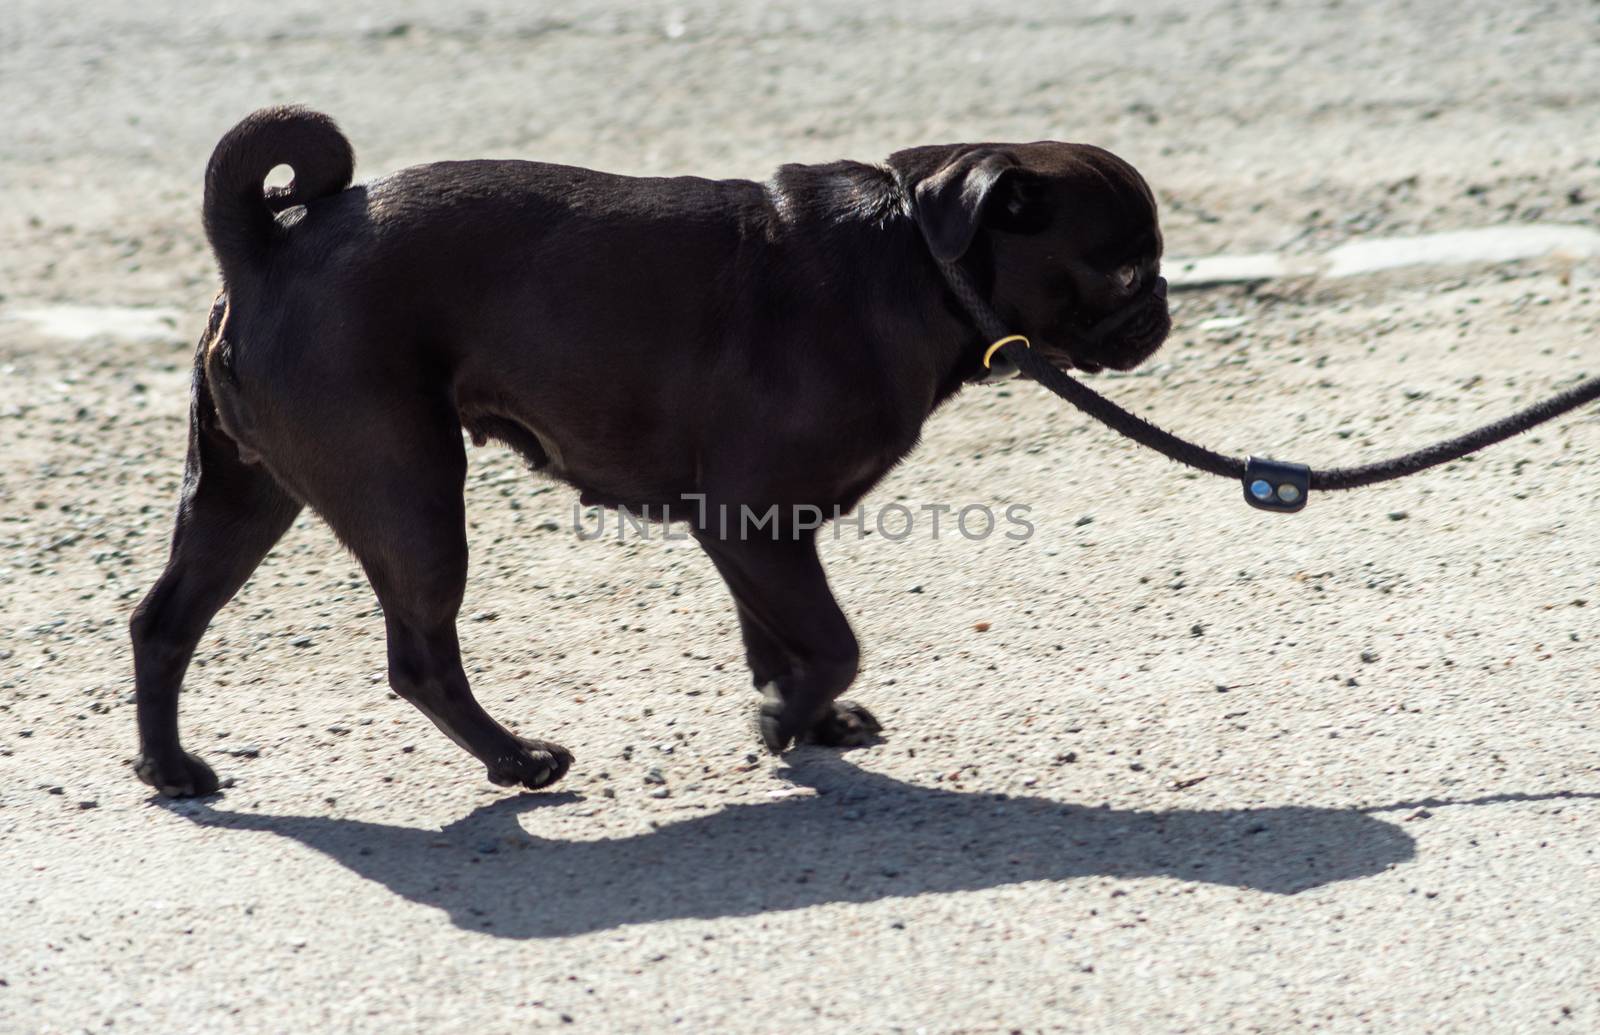 Black pug dog on a leash on a sunny day.